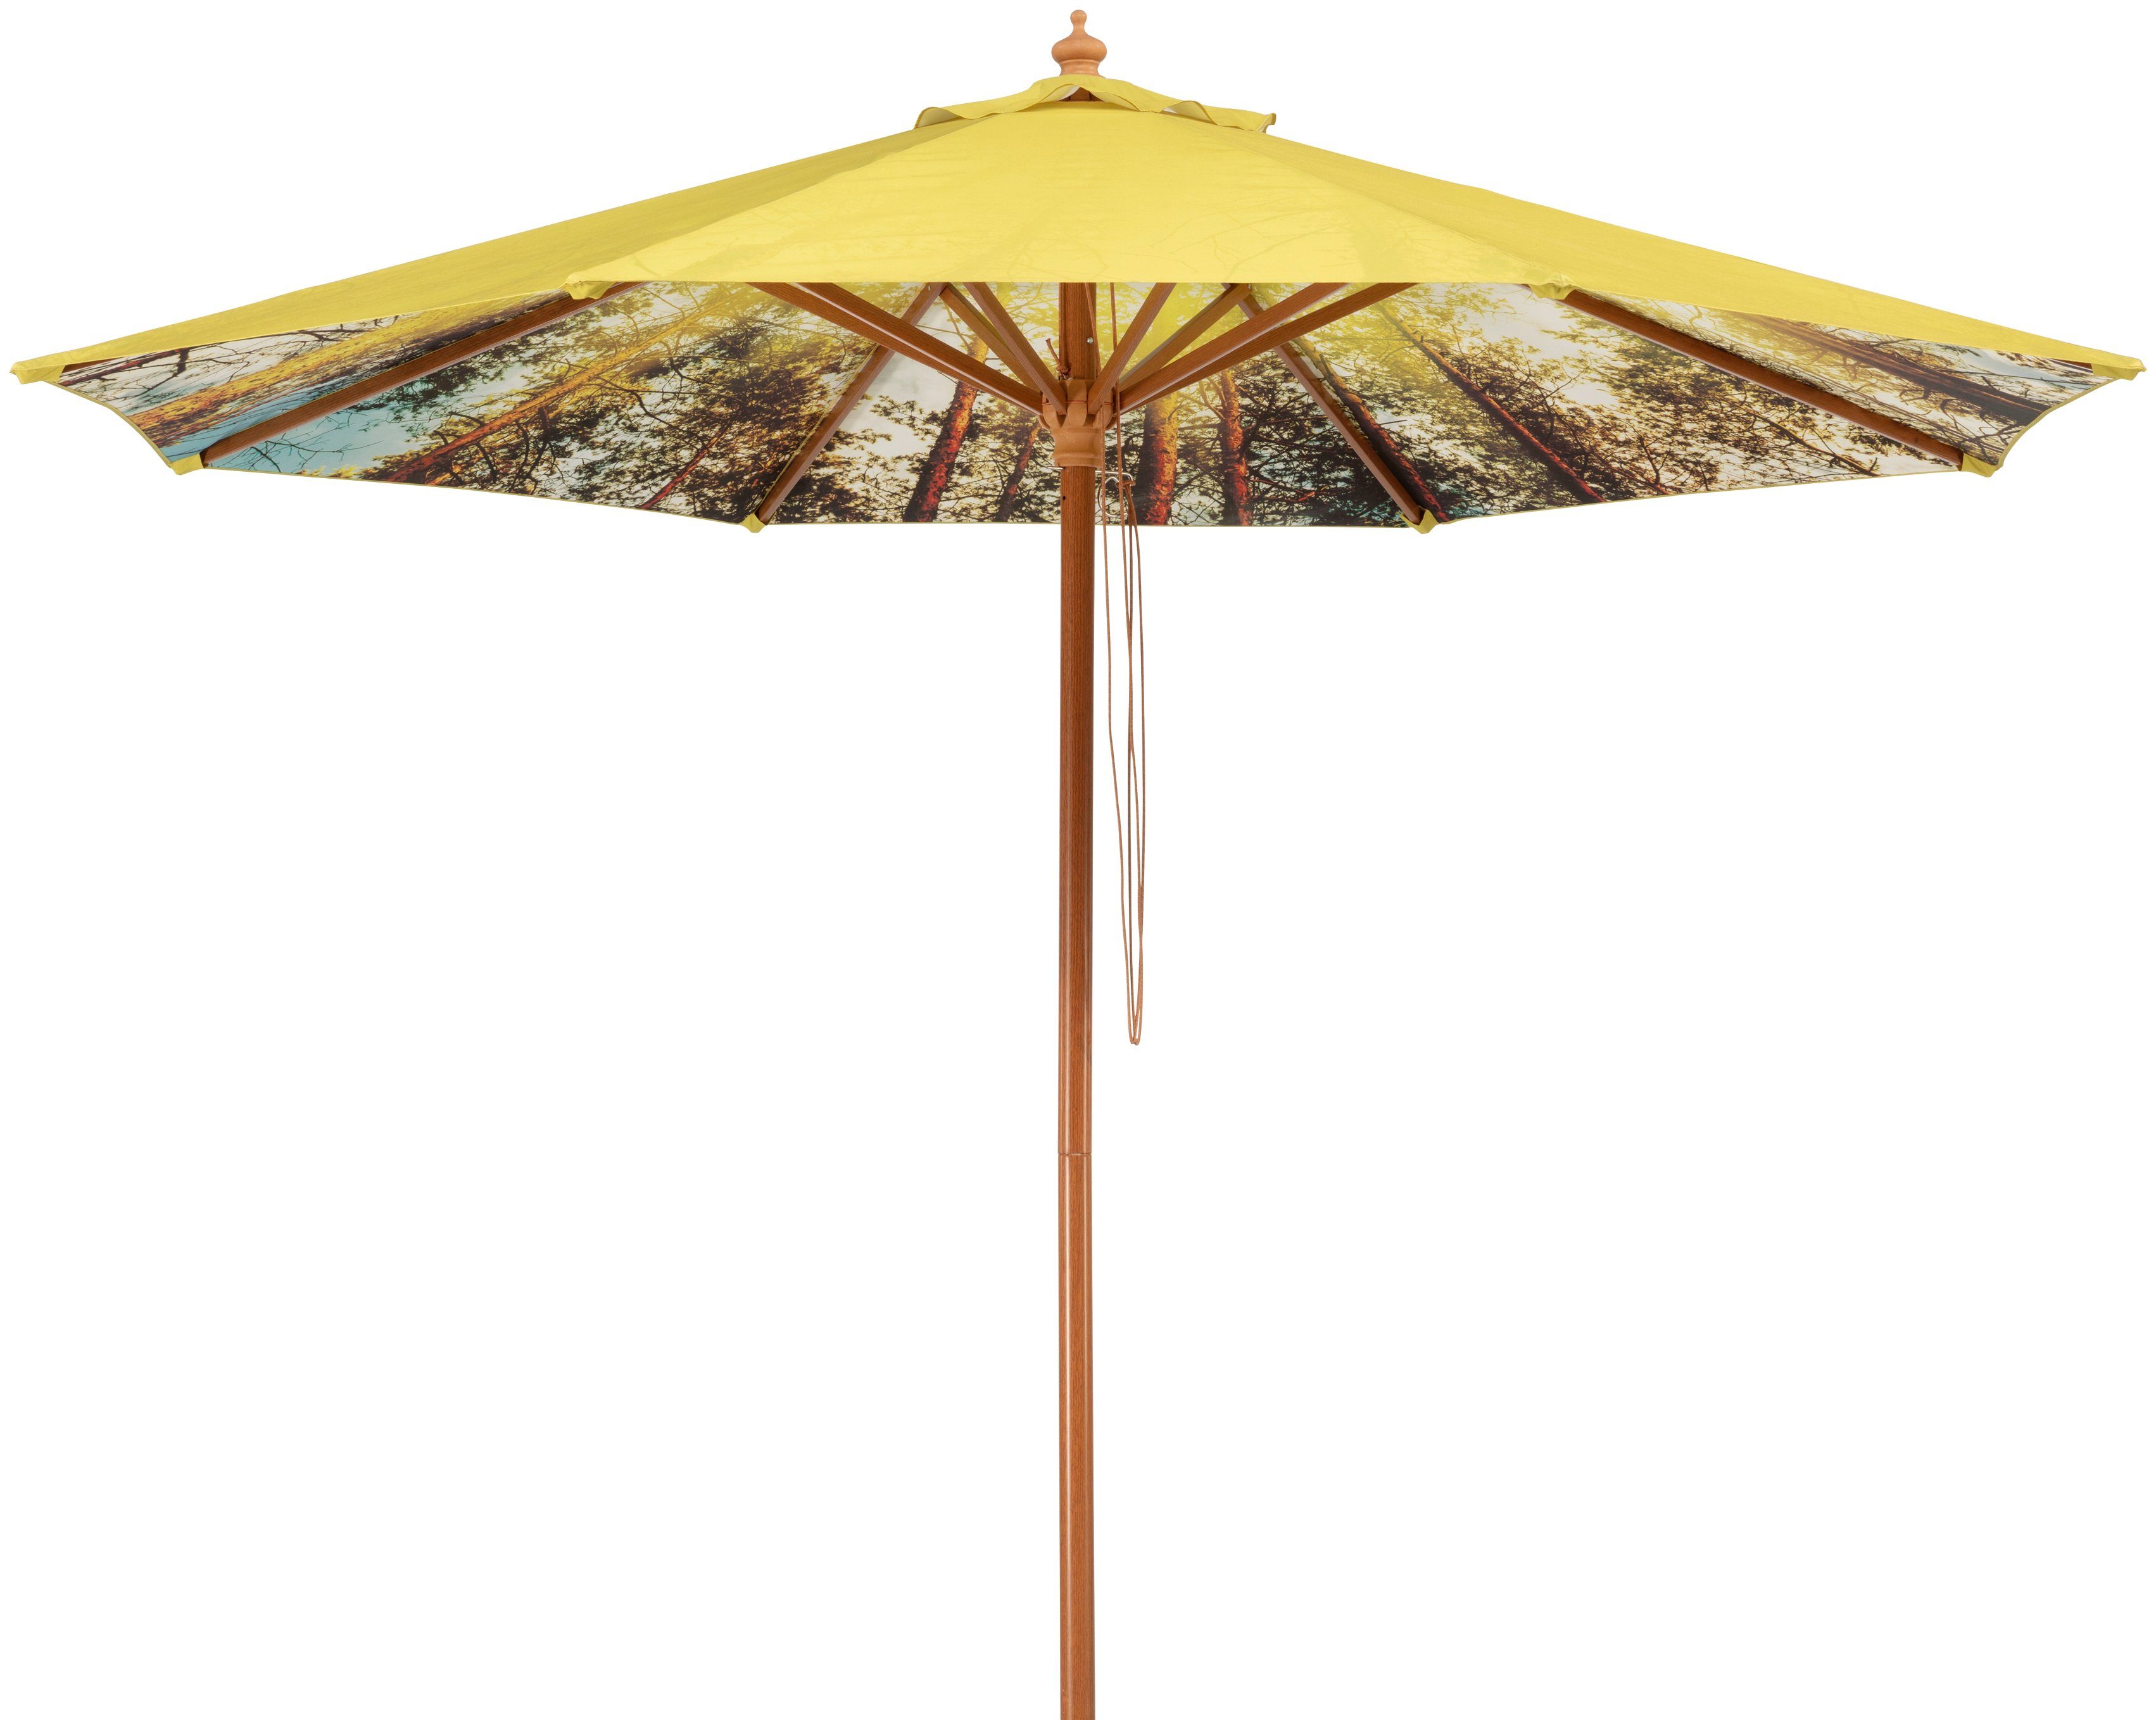 Schneider Schirme Marktschirm Malaga Forest, Durchmesser 300 cm, Innen mit Waldmotiv, rund, ohne Schirmständer